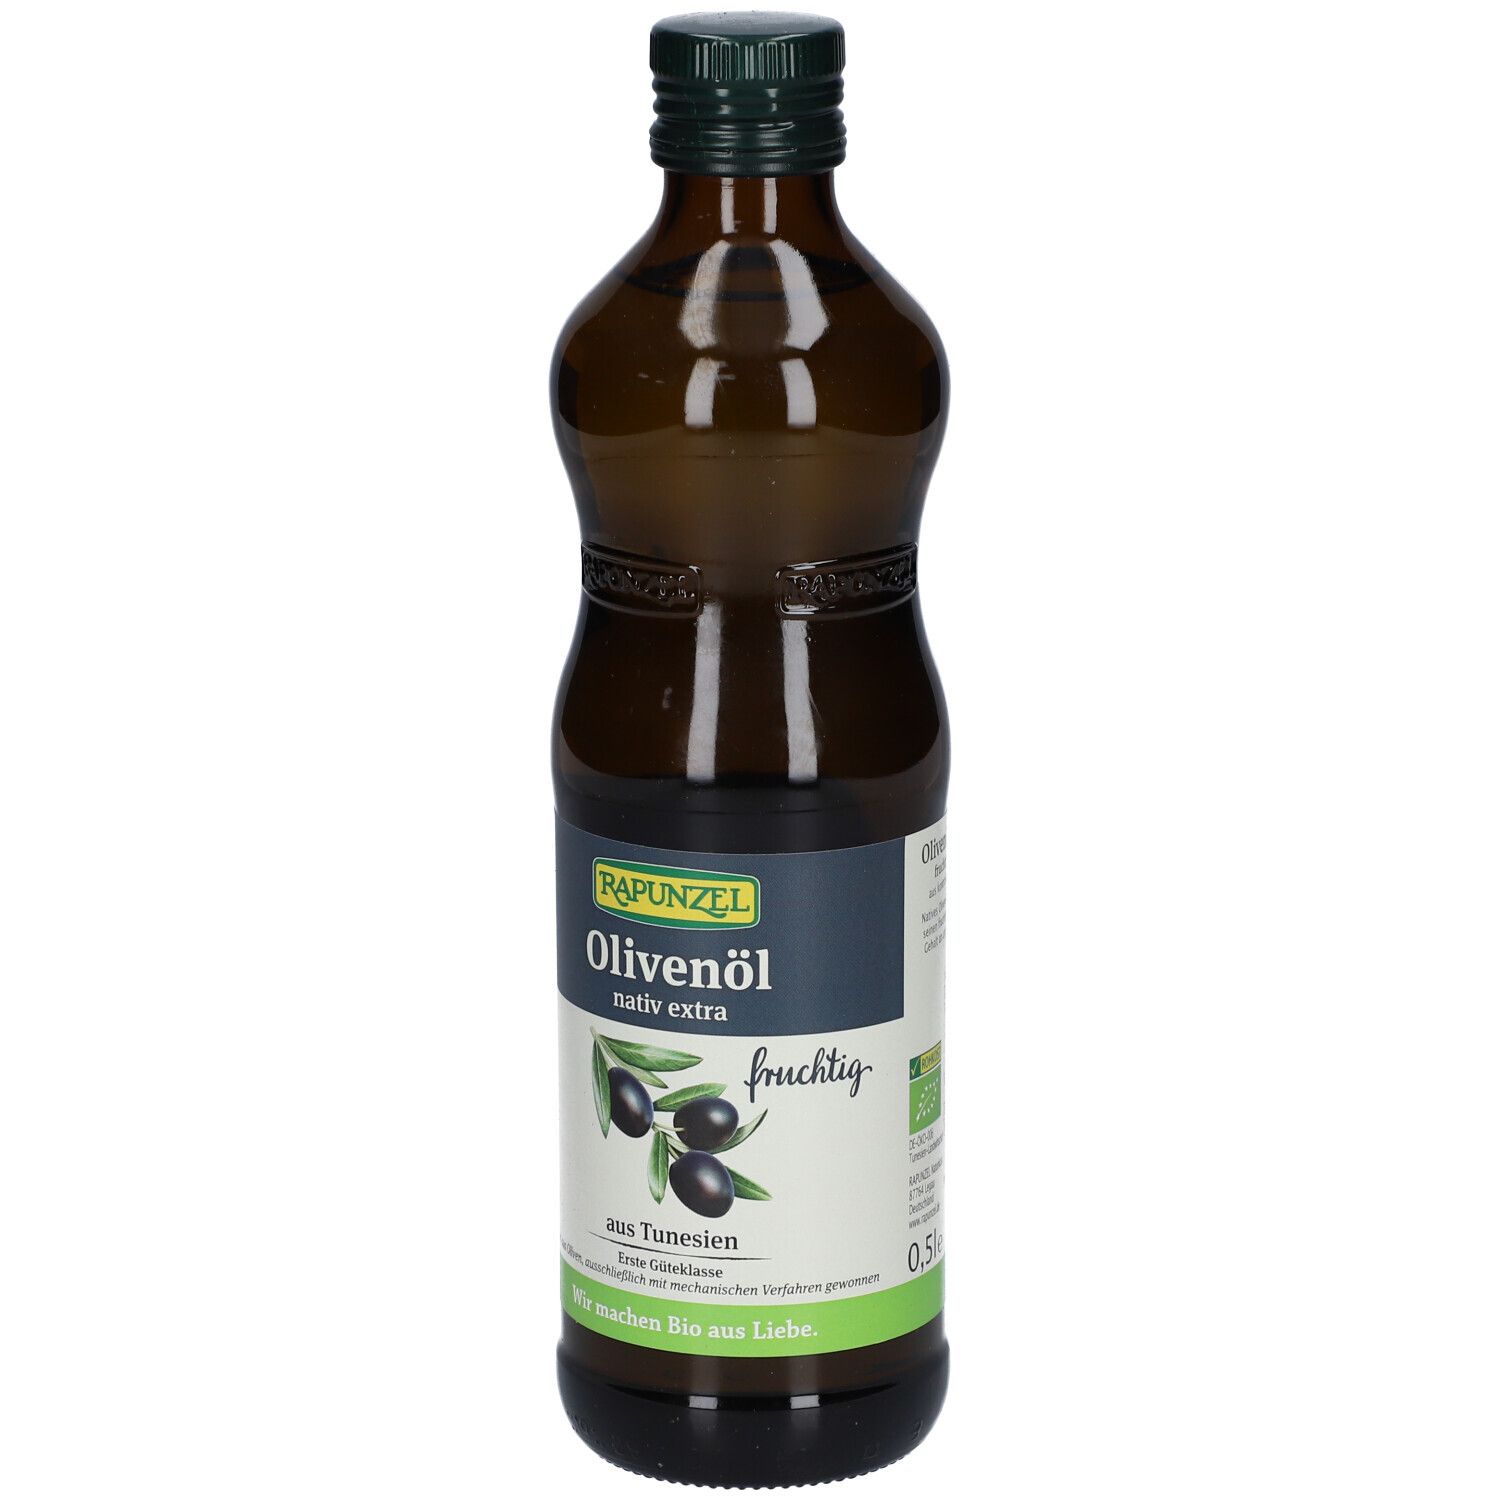 Rapunzel - Olivenöl fruchtig, nativ extra